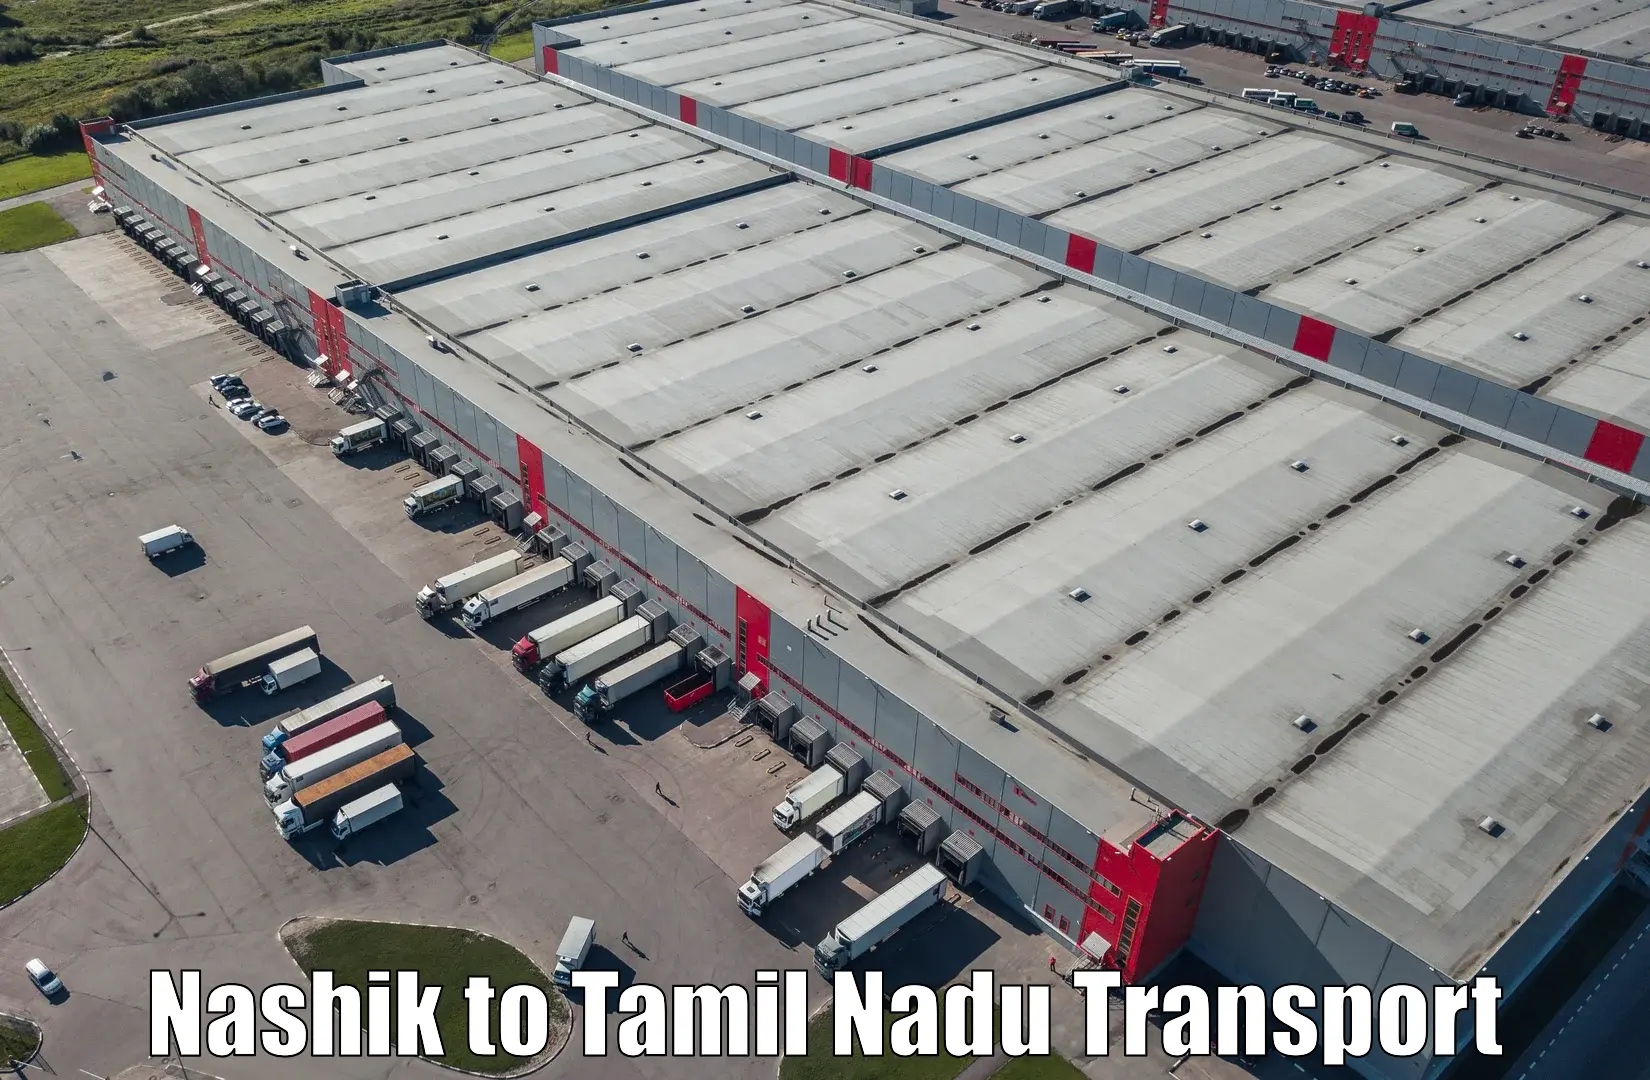 Nearby transport service Nashik to Kumbakonam